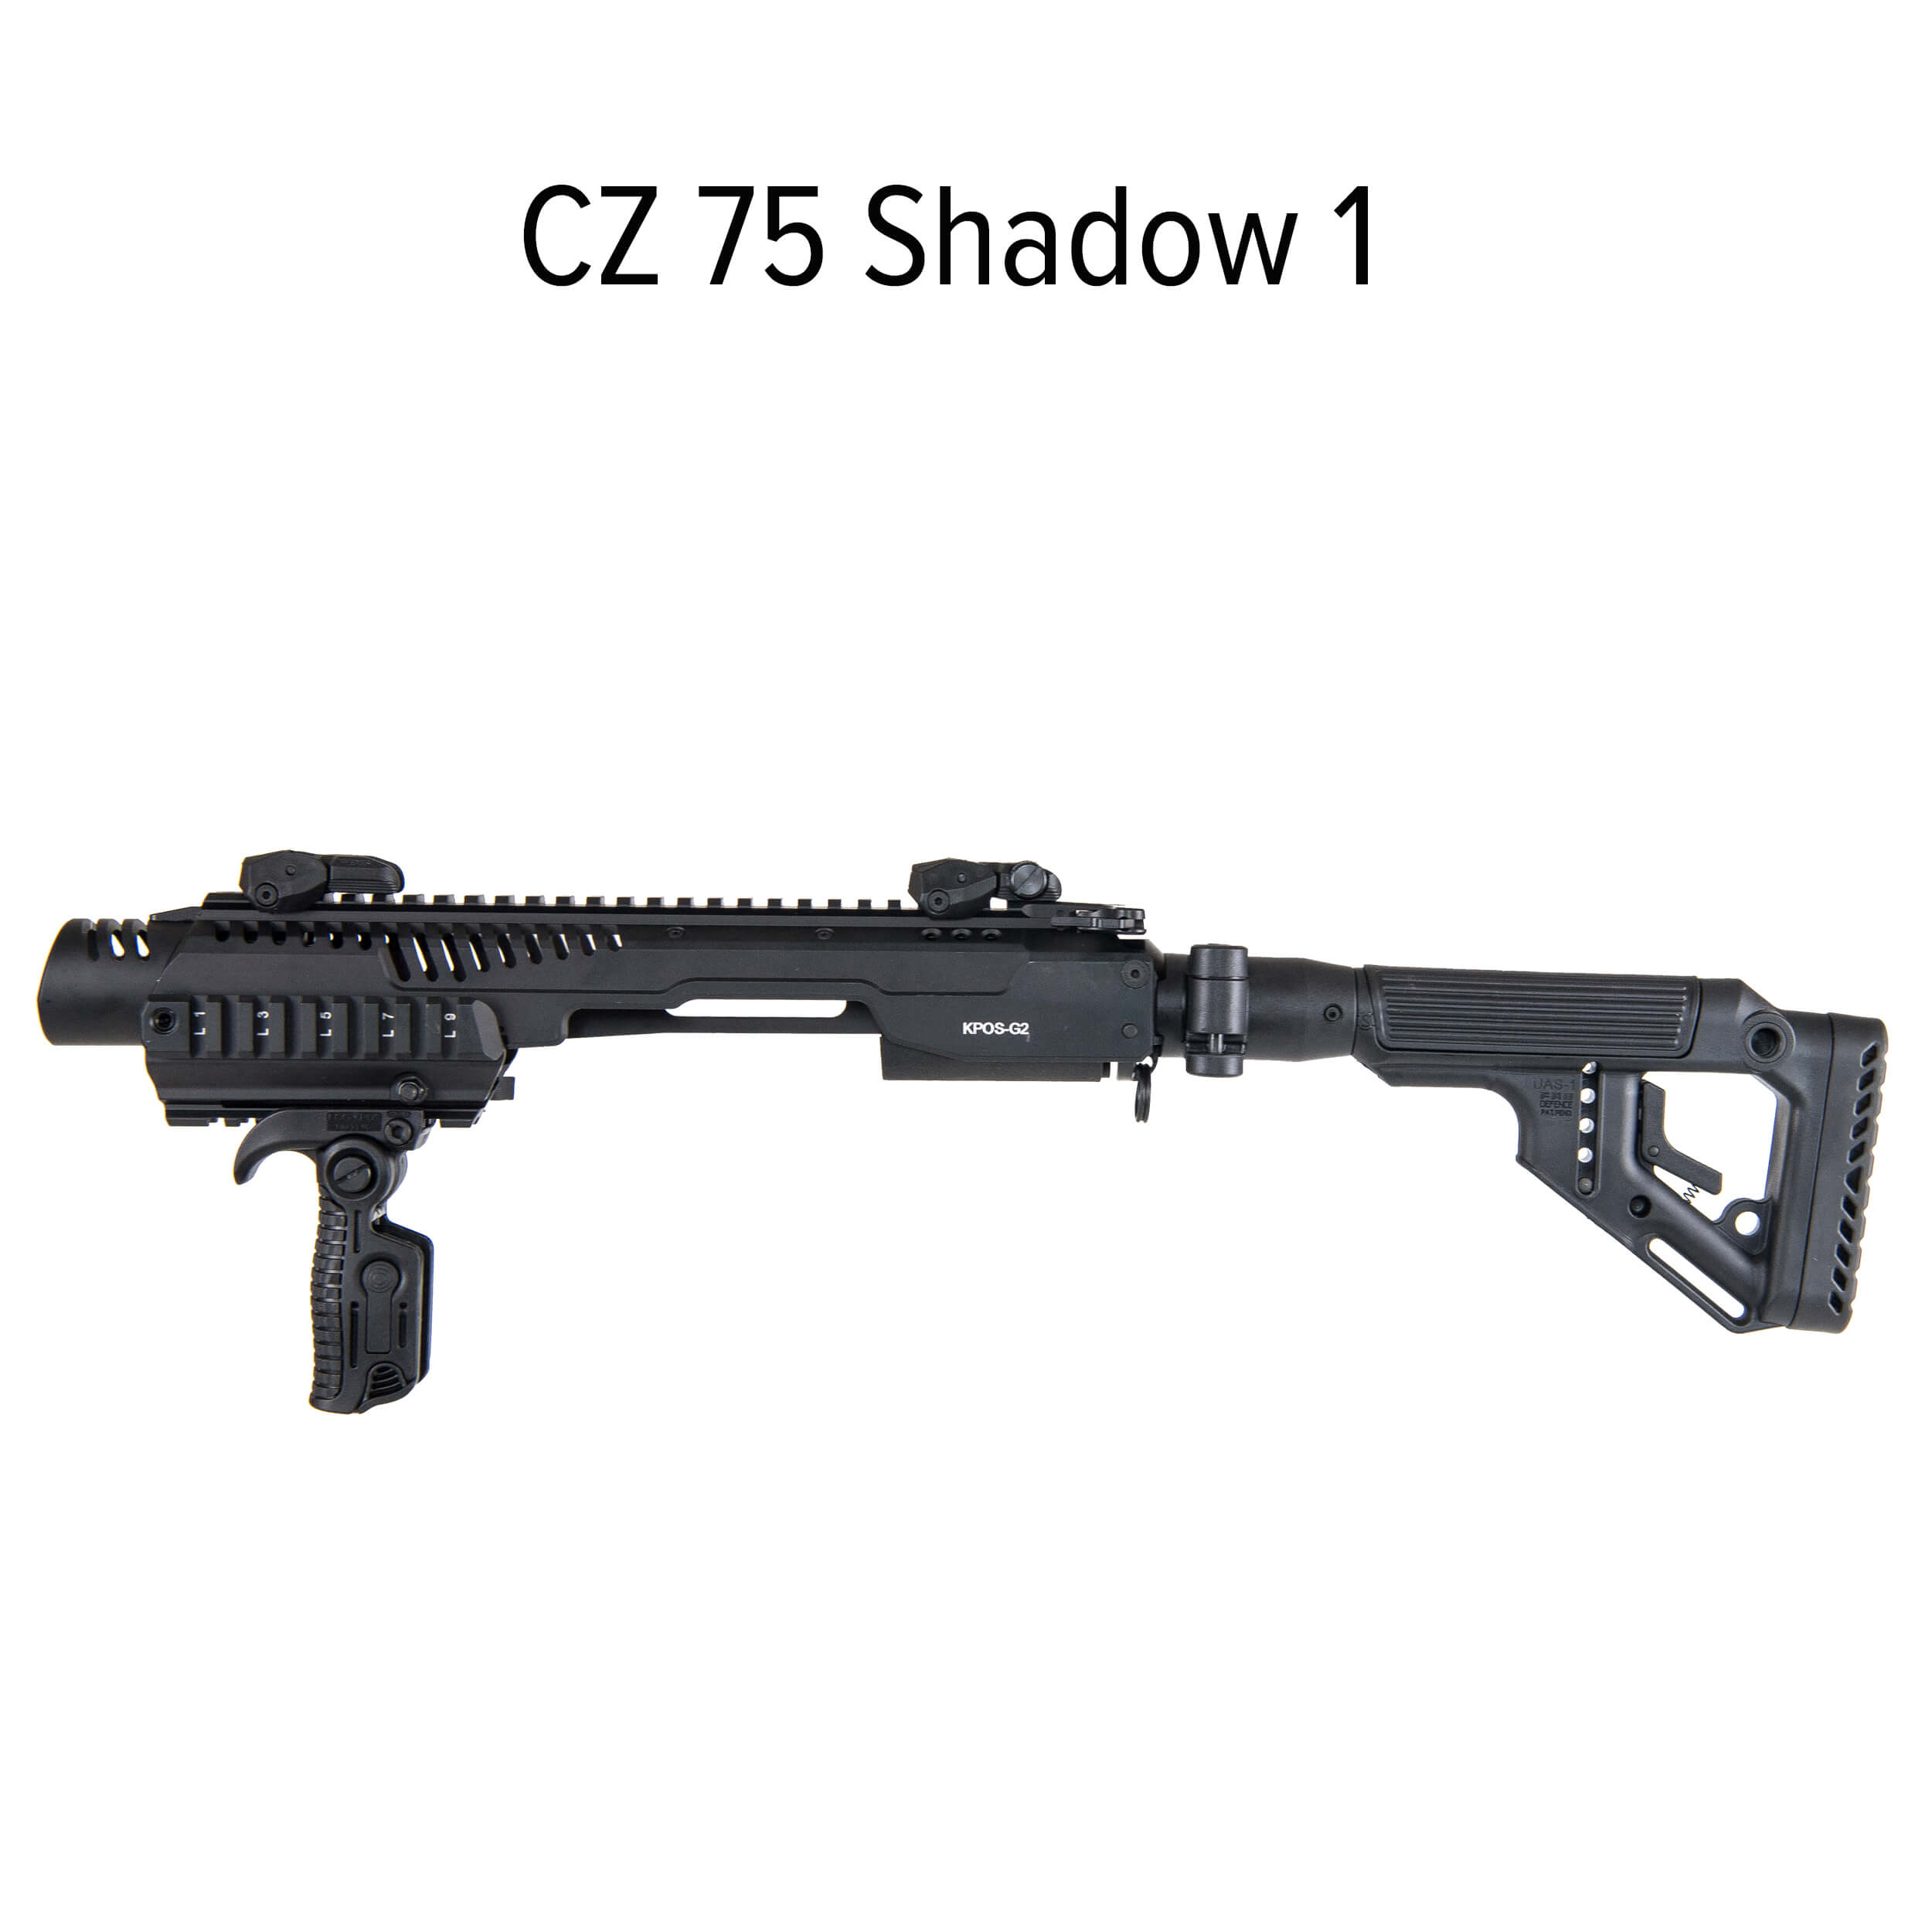 KPOS G2C CZ 75 SP-01 / CZ Shadow 1